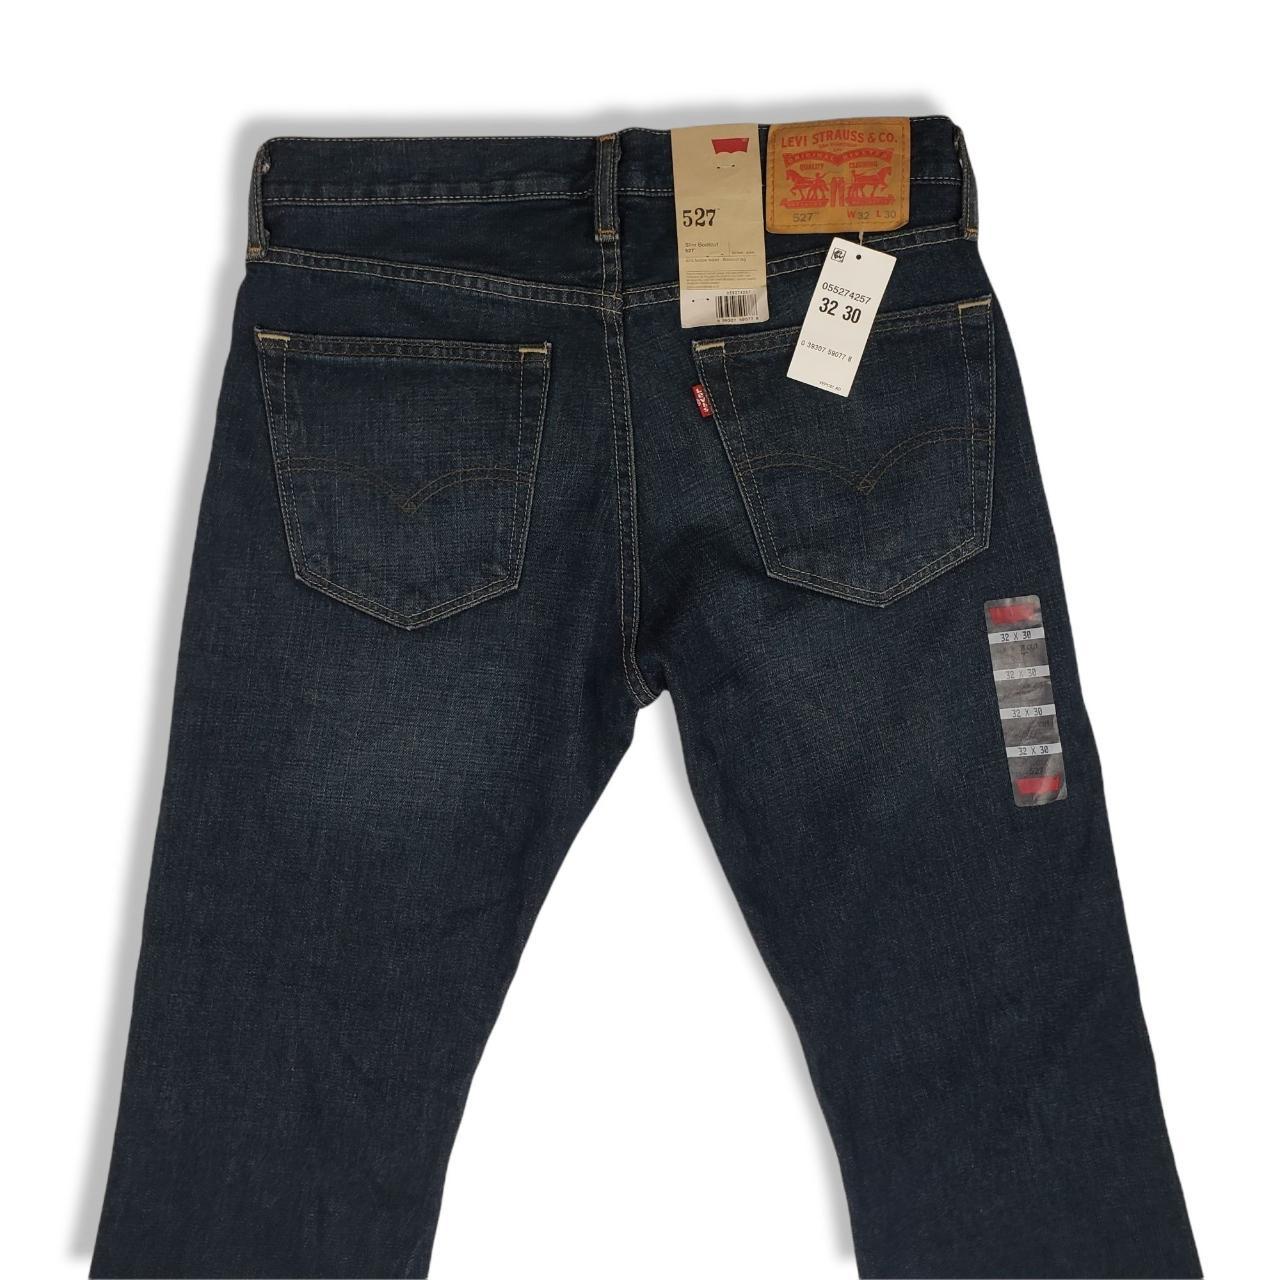 Men's Levis 527 Slim Bootcut Jeans Size 32x30 New... - Depop